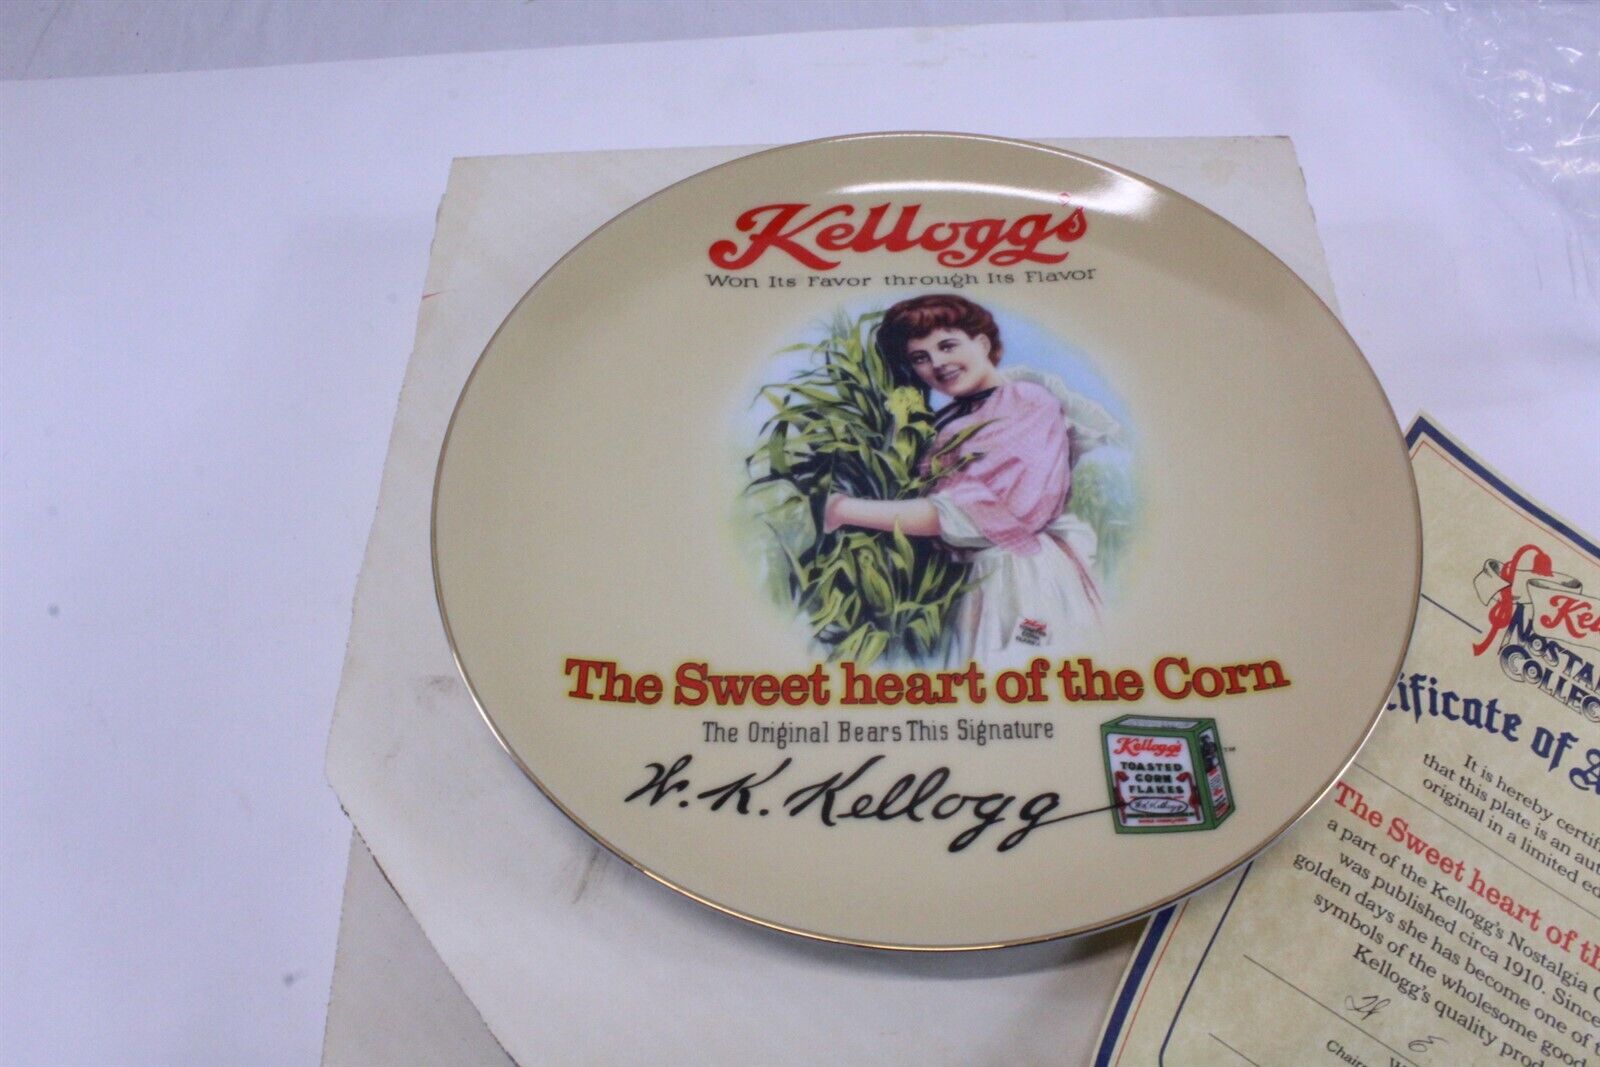 1989 Kellogg's Nostalgia Collection Collector Plate Porcelain Transferware